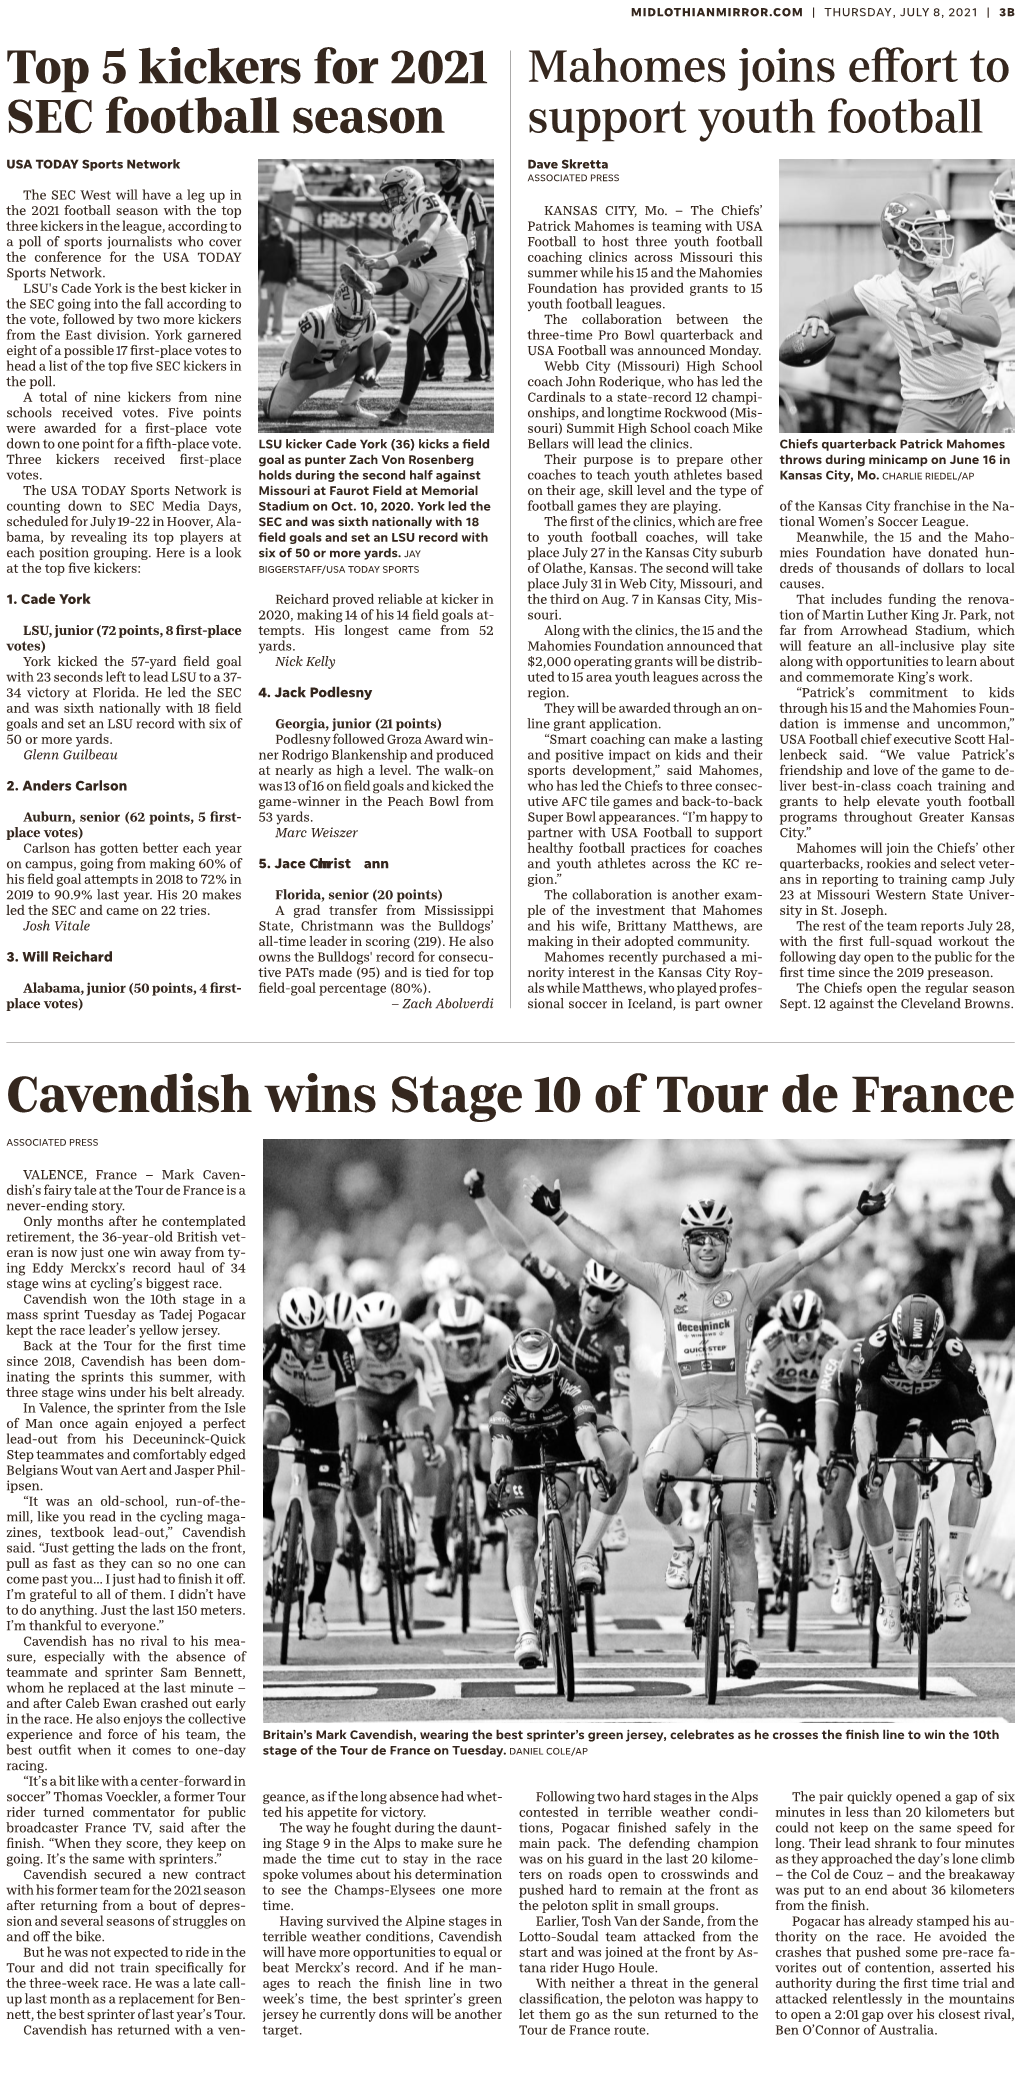 Cavendish Wins Stage 10 of Tour De France